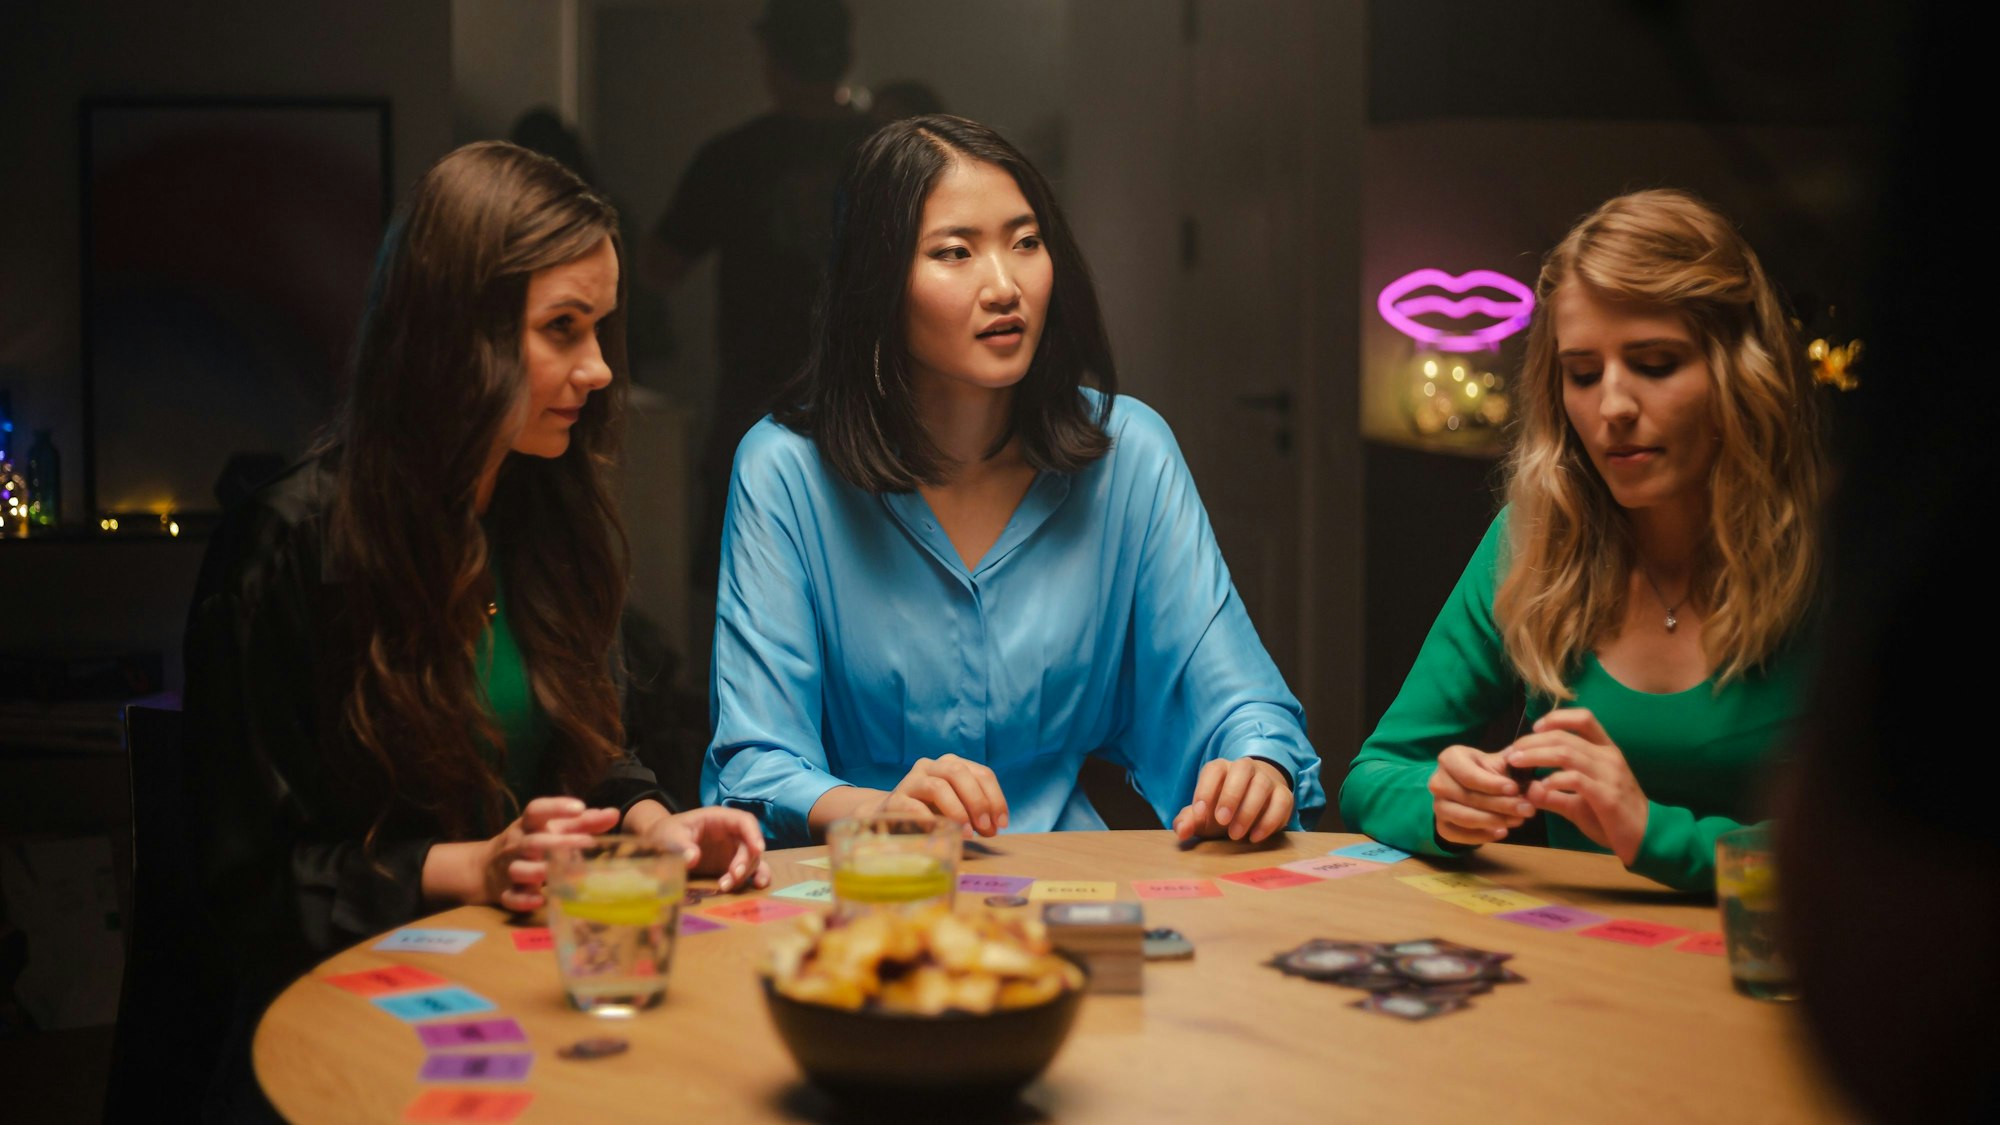 drei Frauen sitzen an einem runden Holztisch, vor ihnen liegen Spielkarten